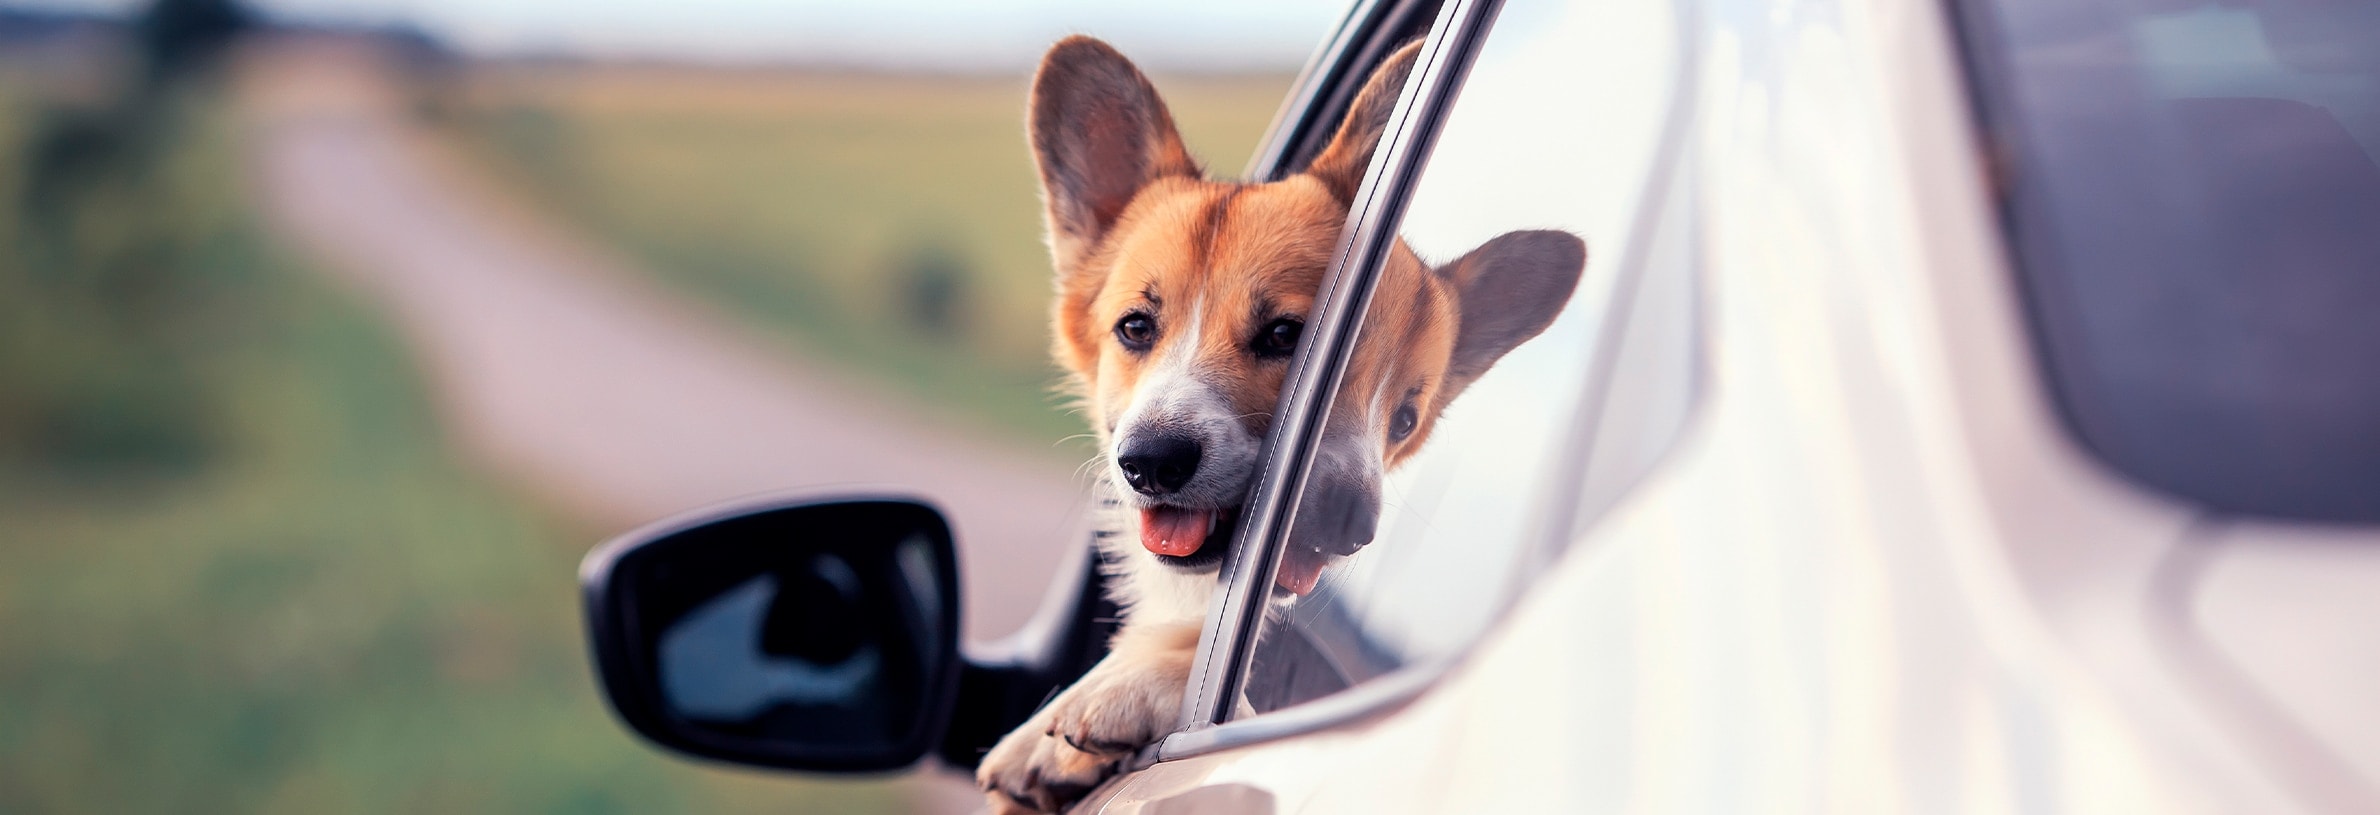 Hond vervoeren in de auto, hoe doe ik dat veilig?